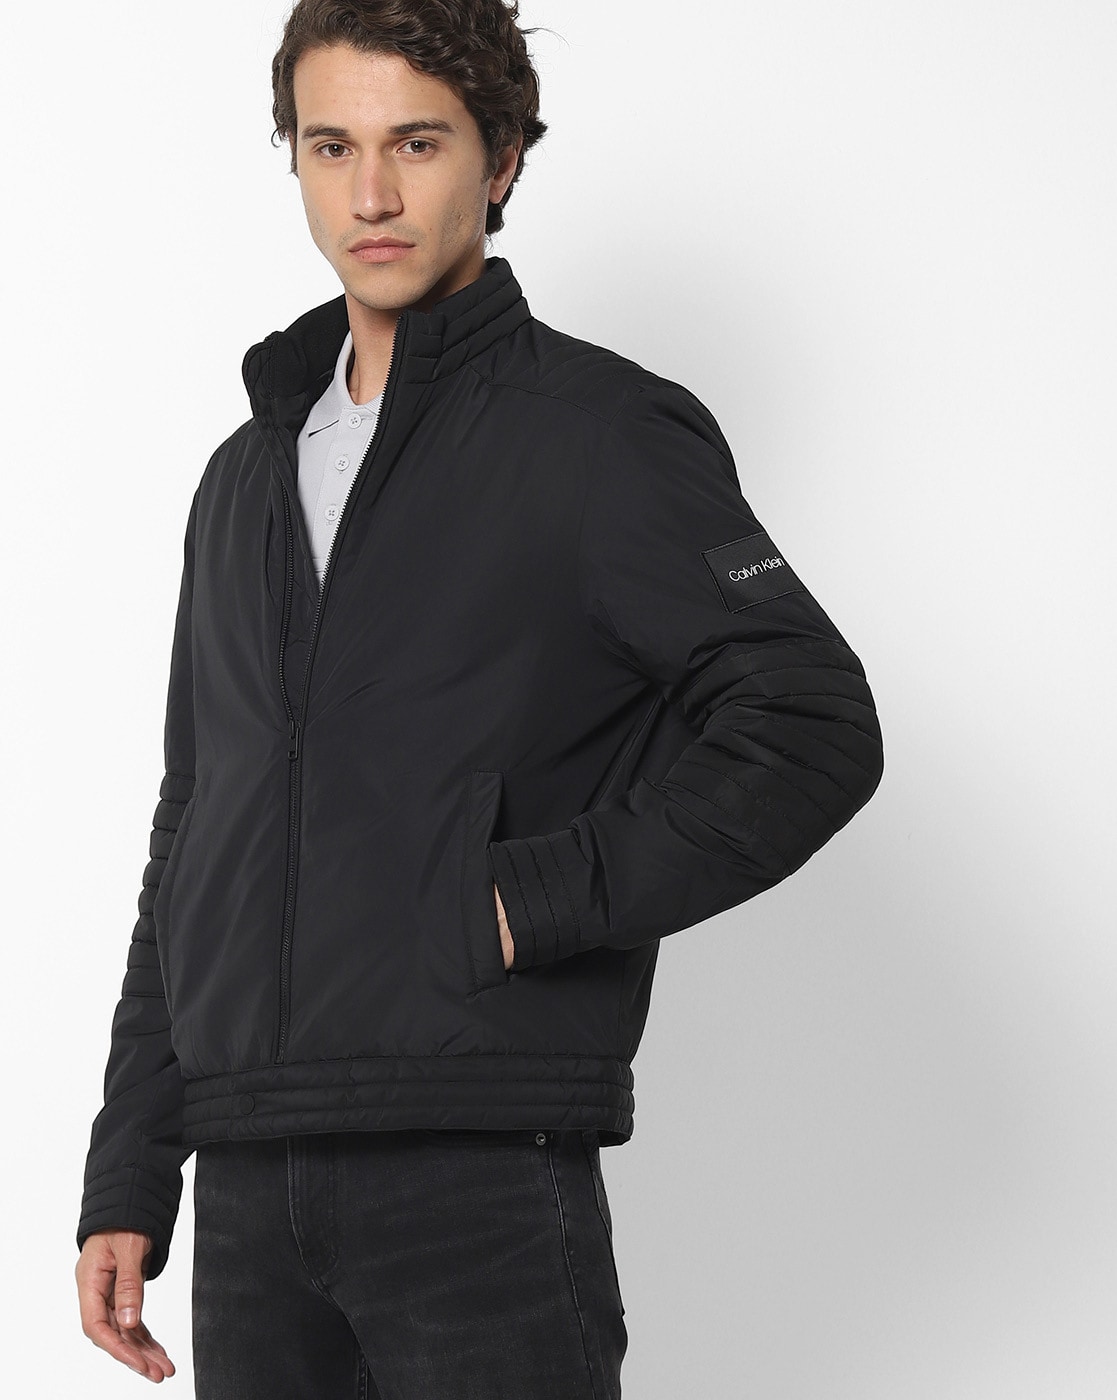 Calvin Klein Jacket -Size XL - pre owned | eBay-gemektower.com.vn